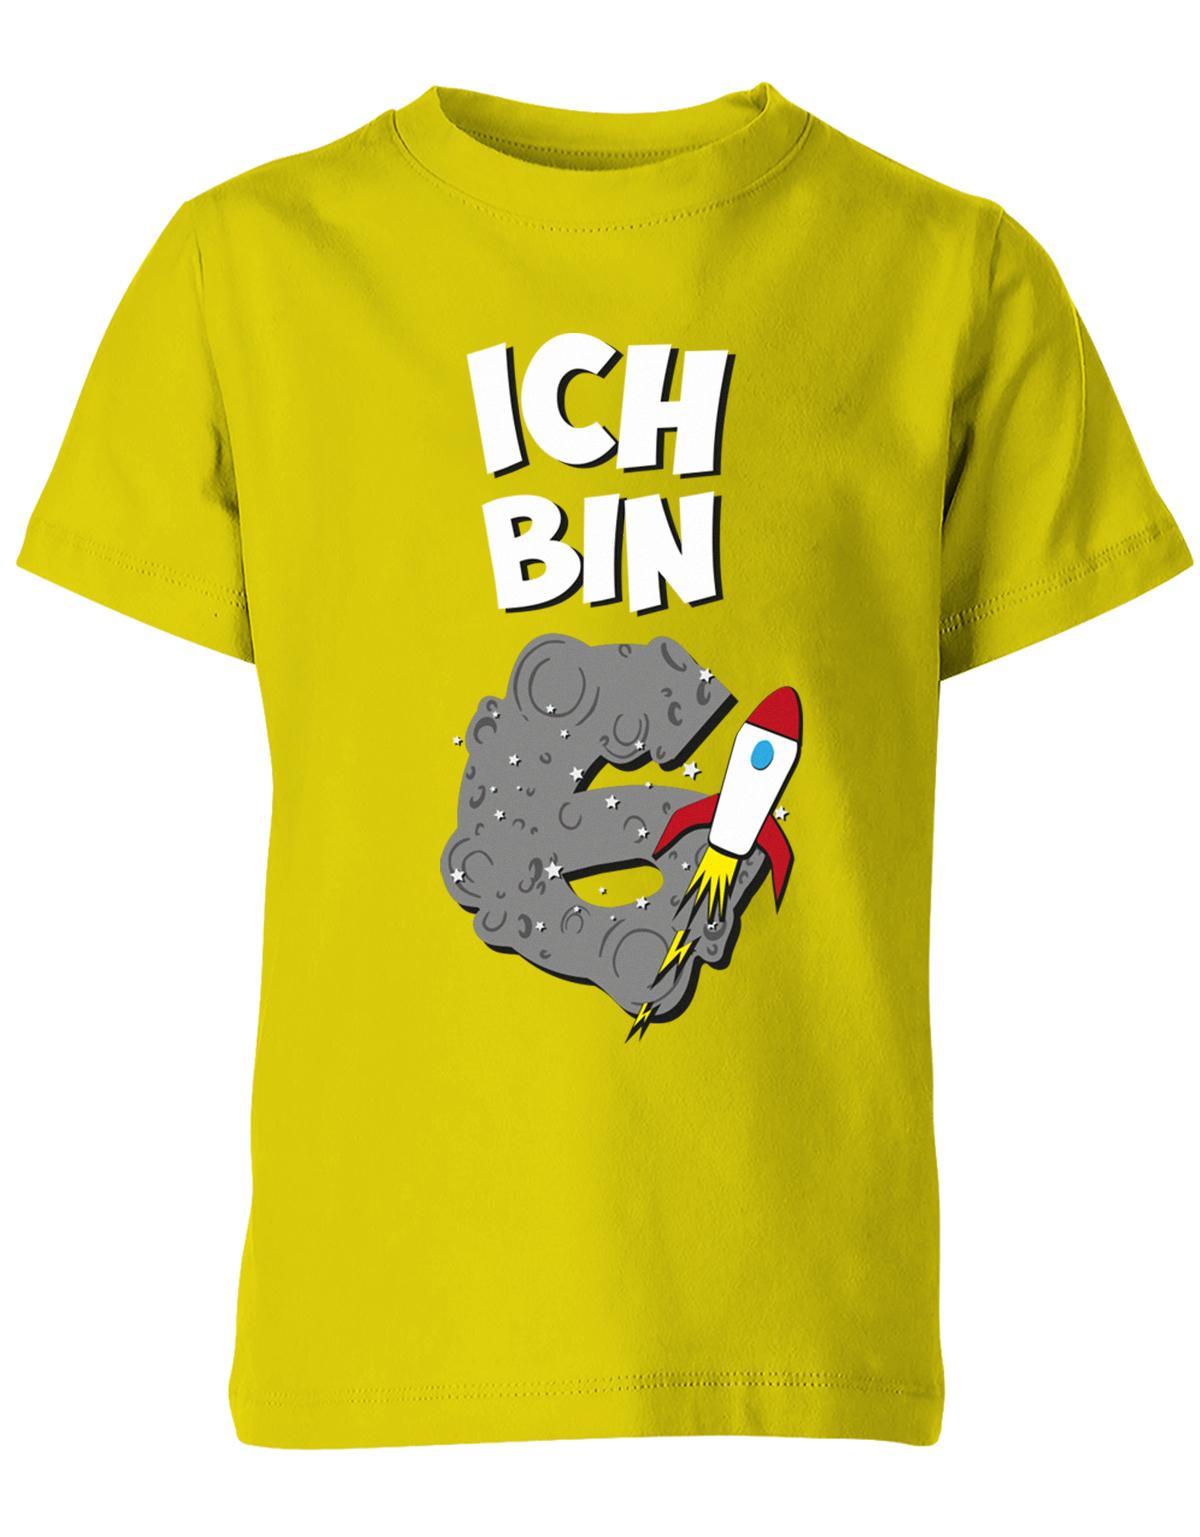 ich-bin-6-weltraum-rakete-planet-geburtstag-kinder-shirt-gelb